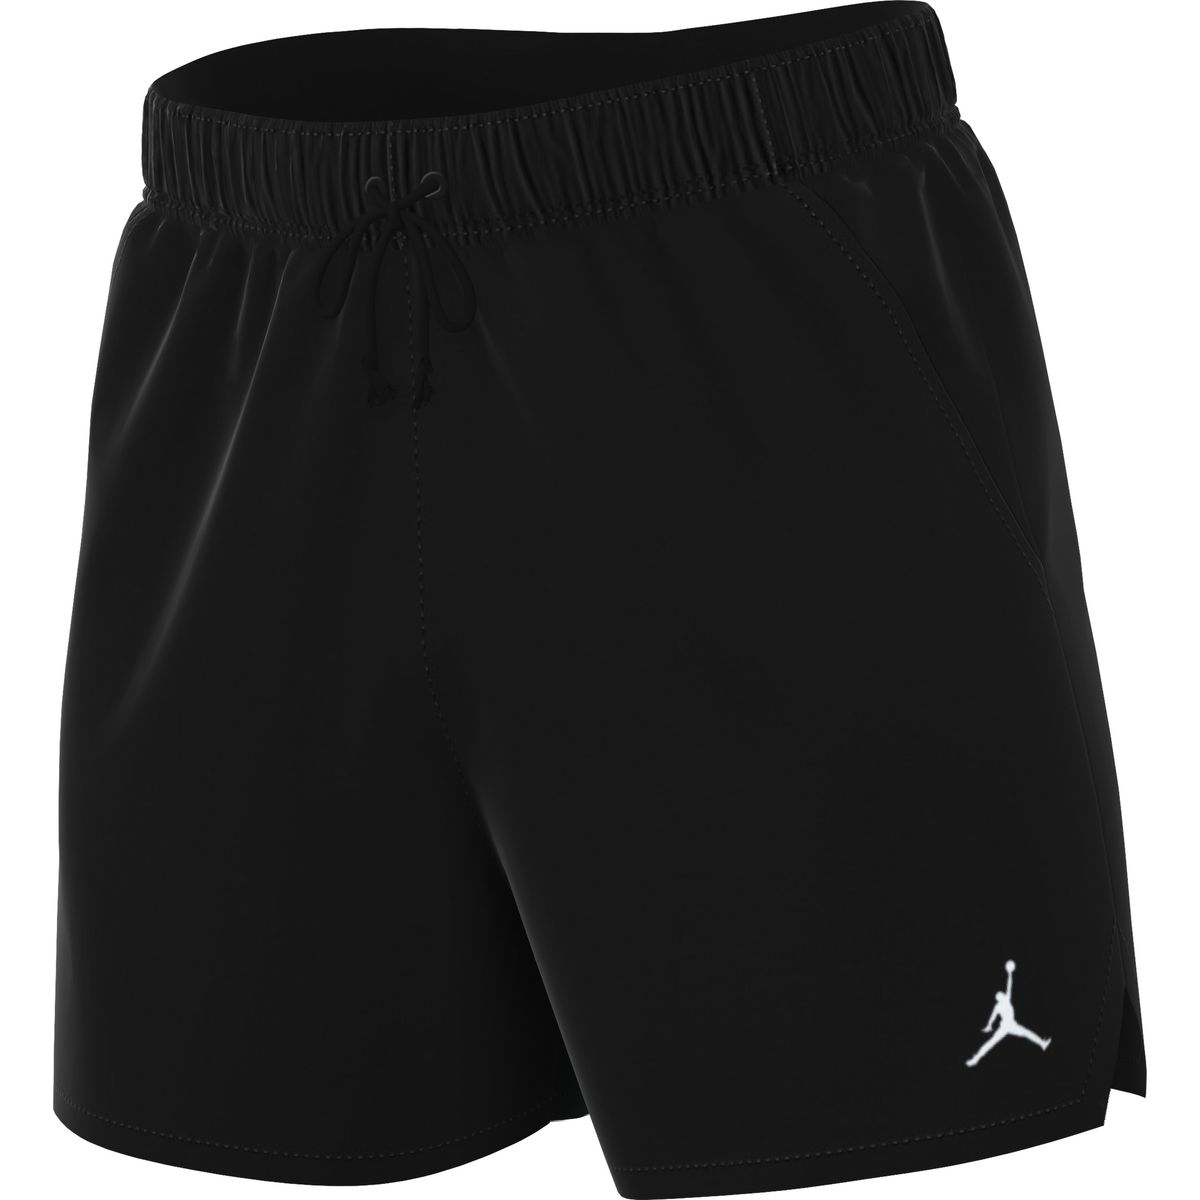 Nike Jordan Essential Herren Shorts